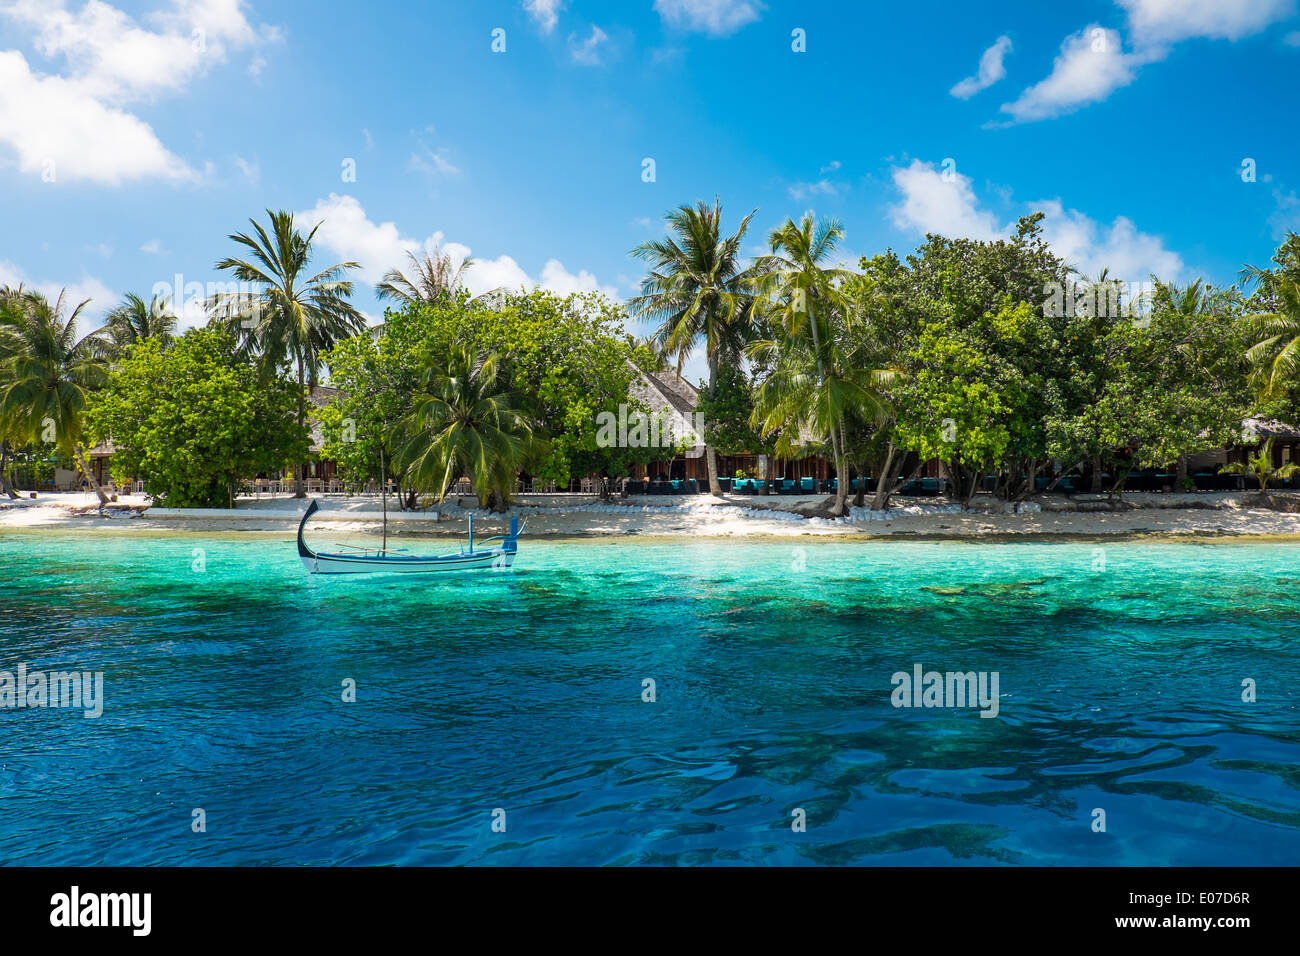 Hotel auf der Insel. Malediven Indischer Ozean Stockfoto